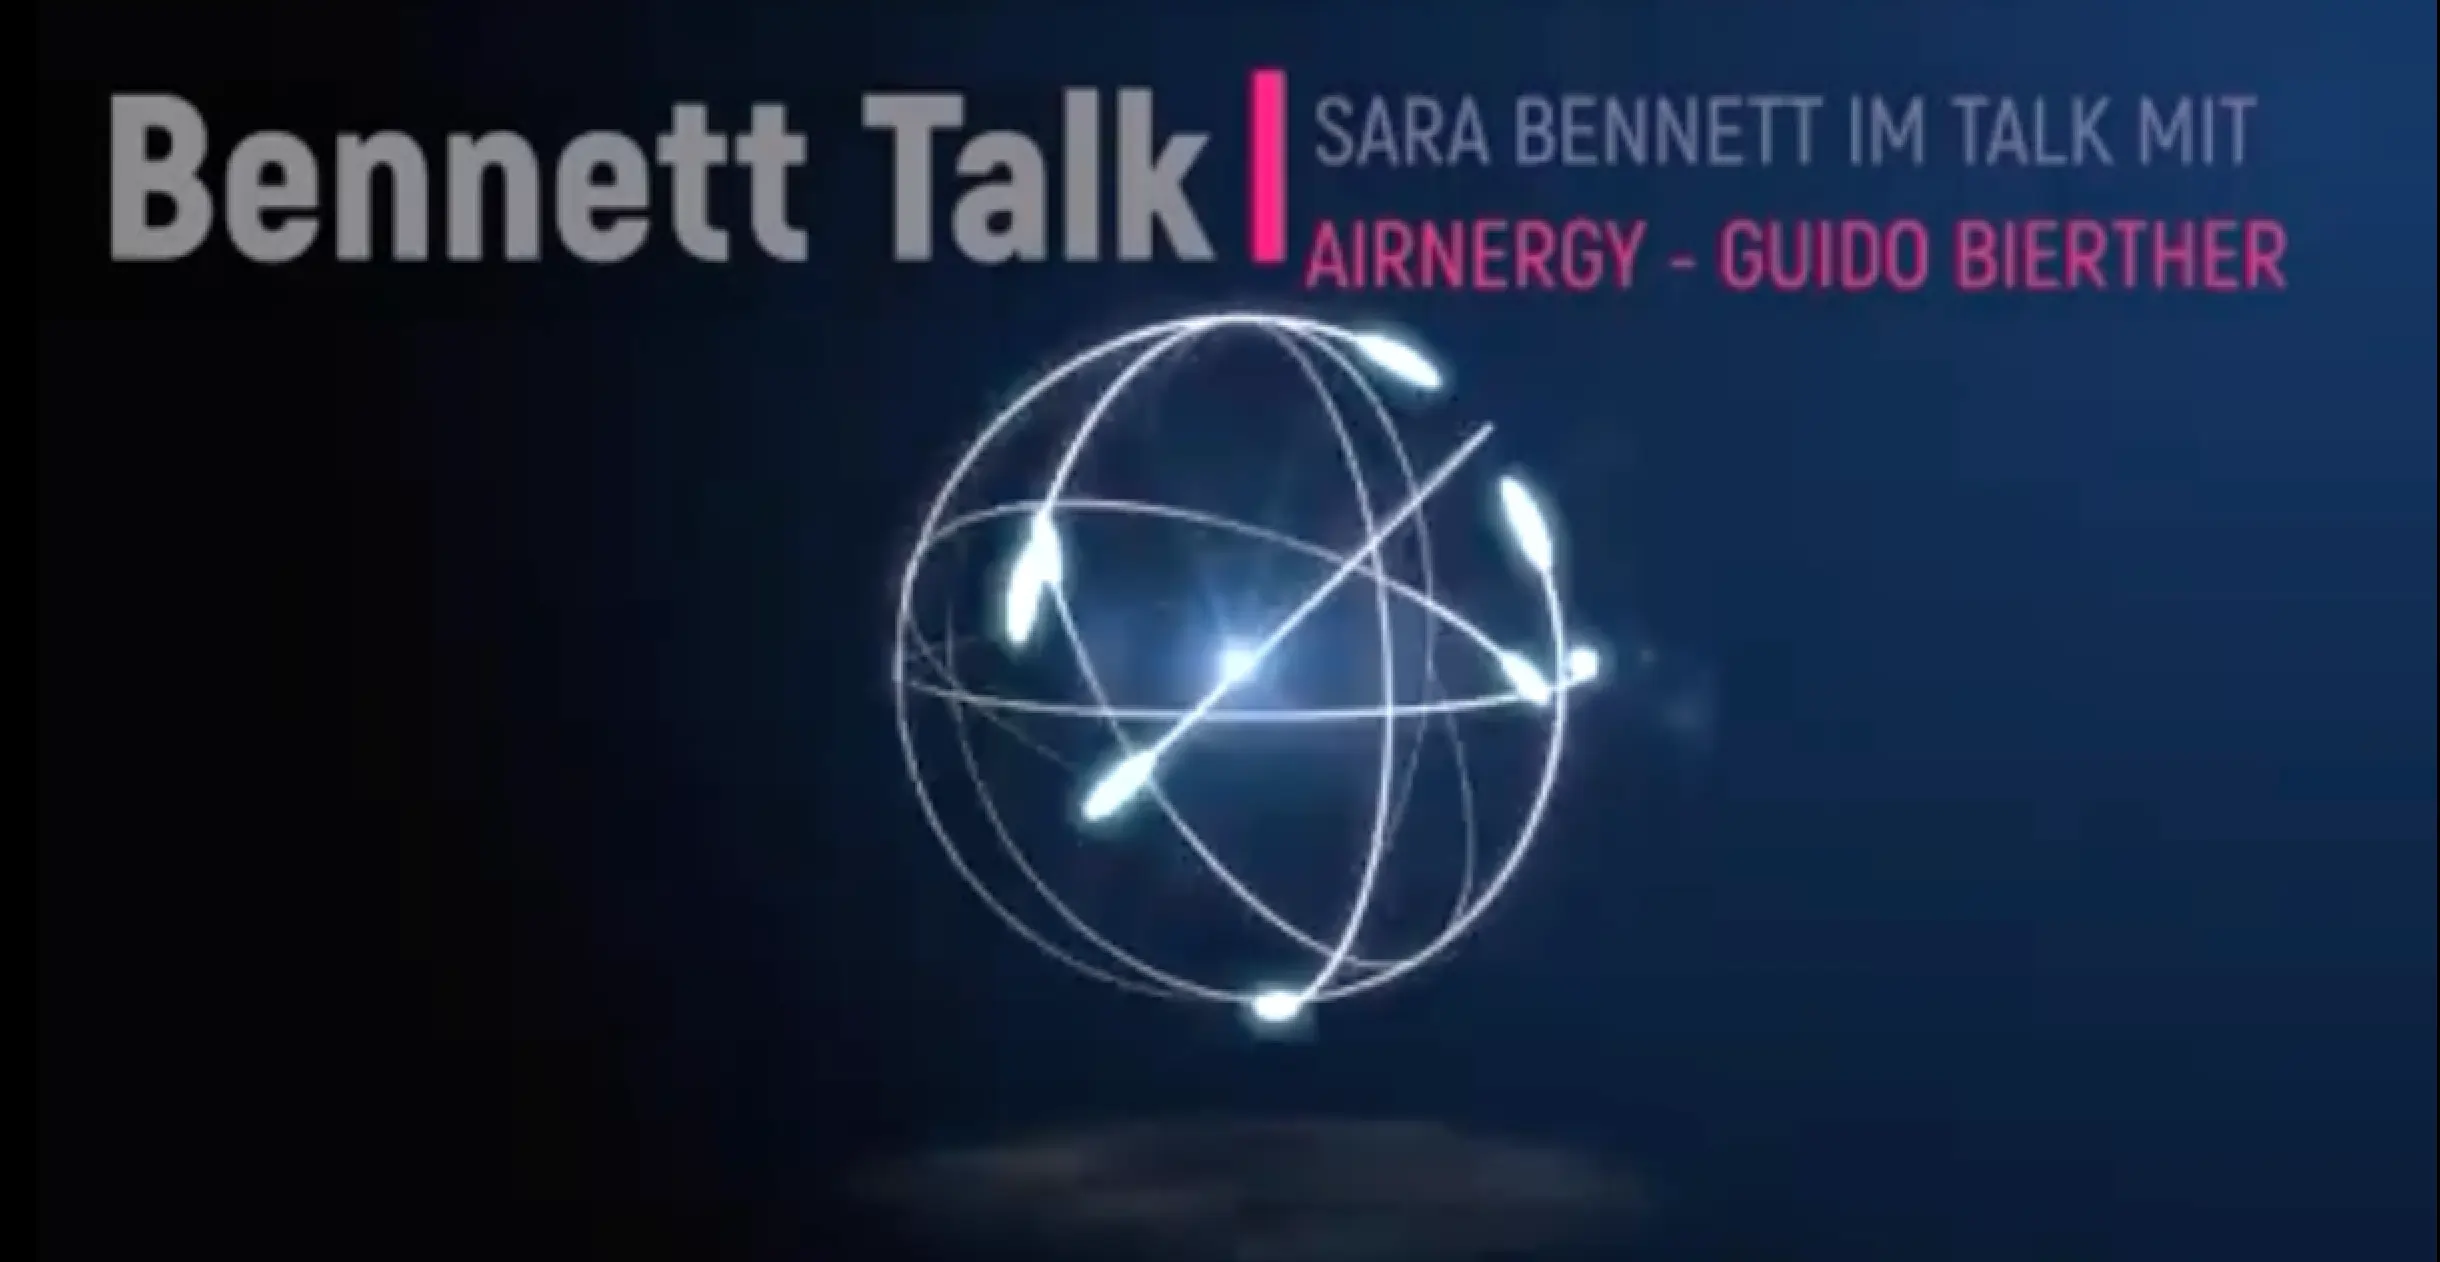 Bennett Talk - Sara Bennett im Gespräch mit Guido Bierther von Airnergy - Luft - viel mehr als nur Sauerstoff